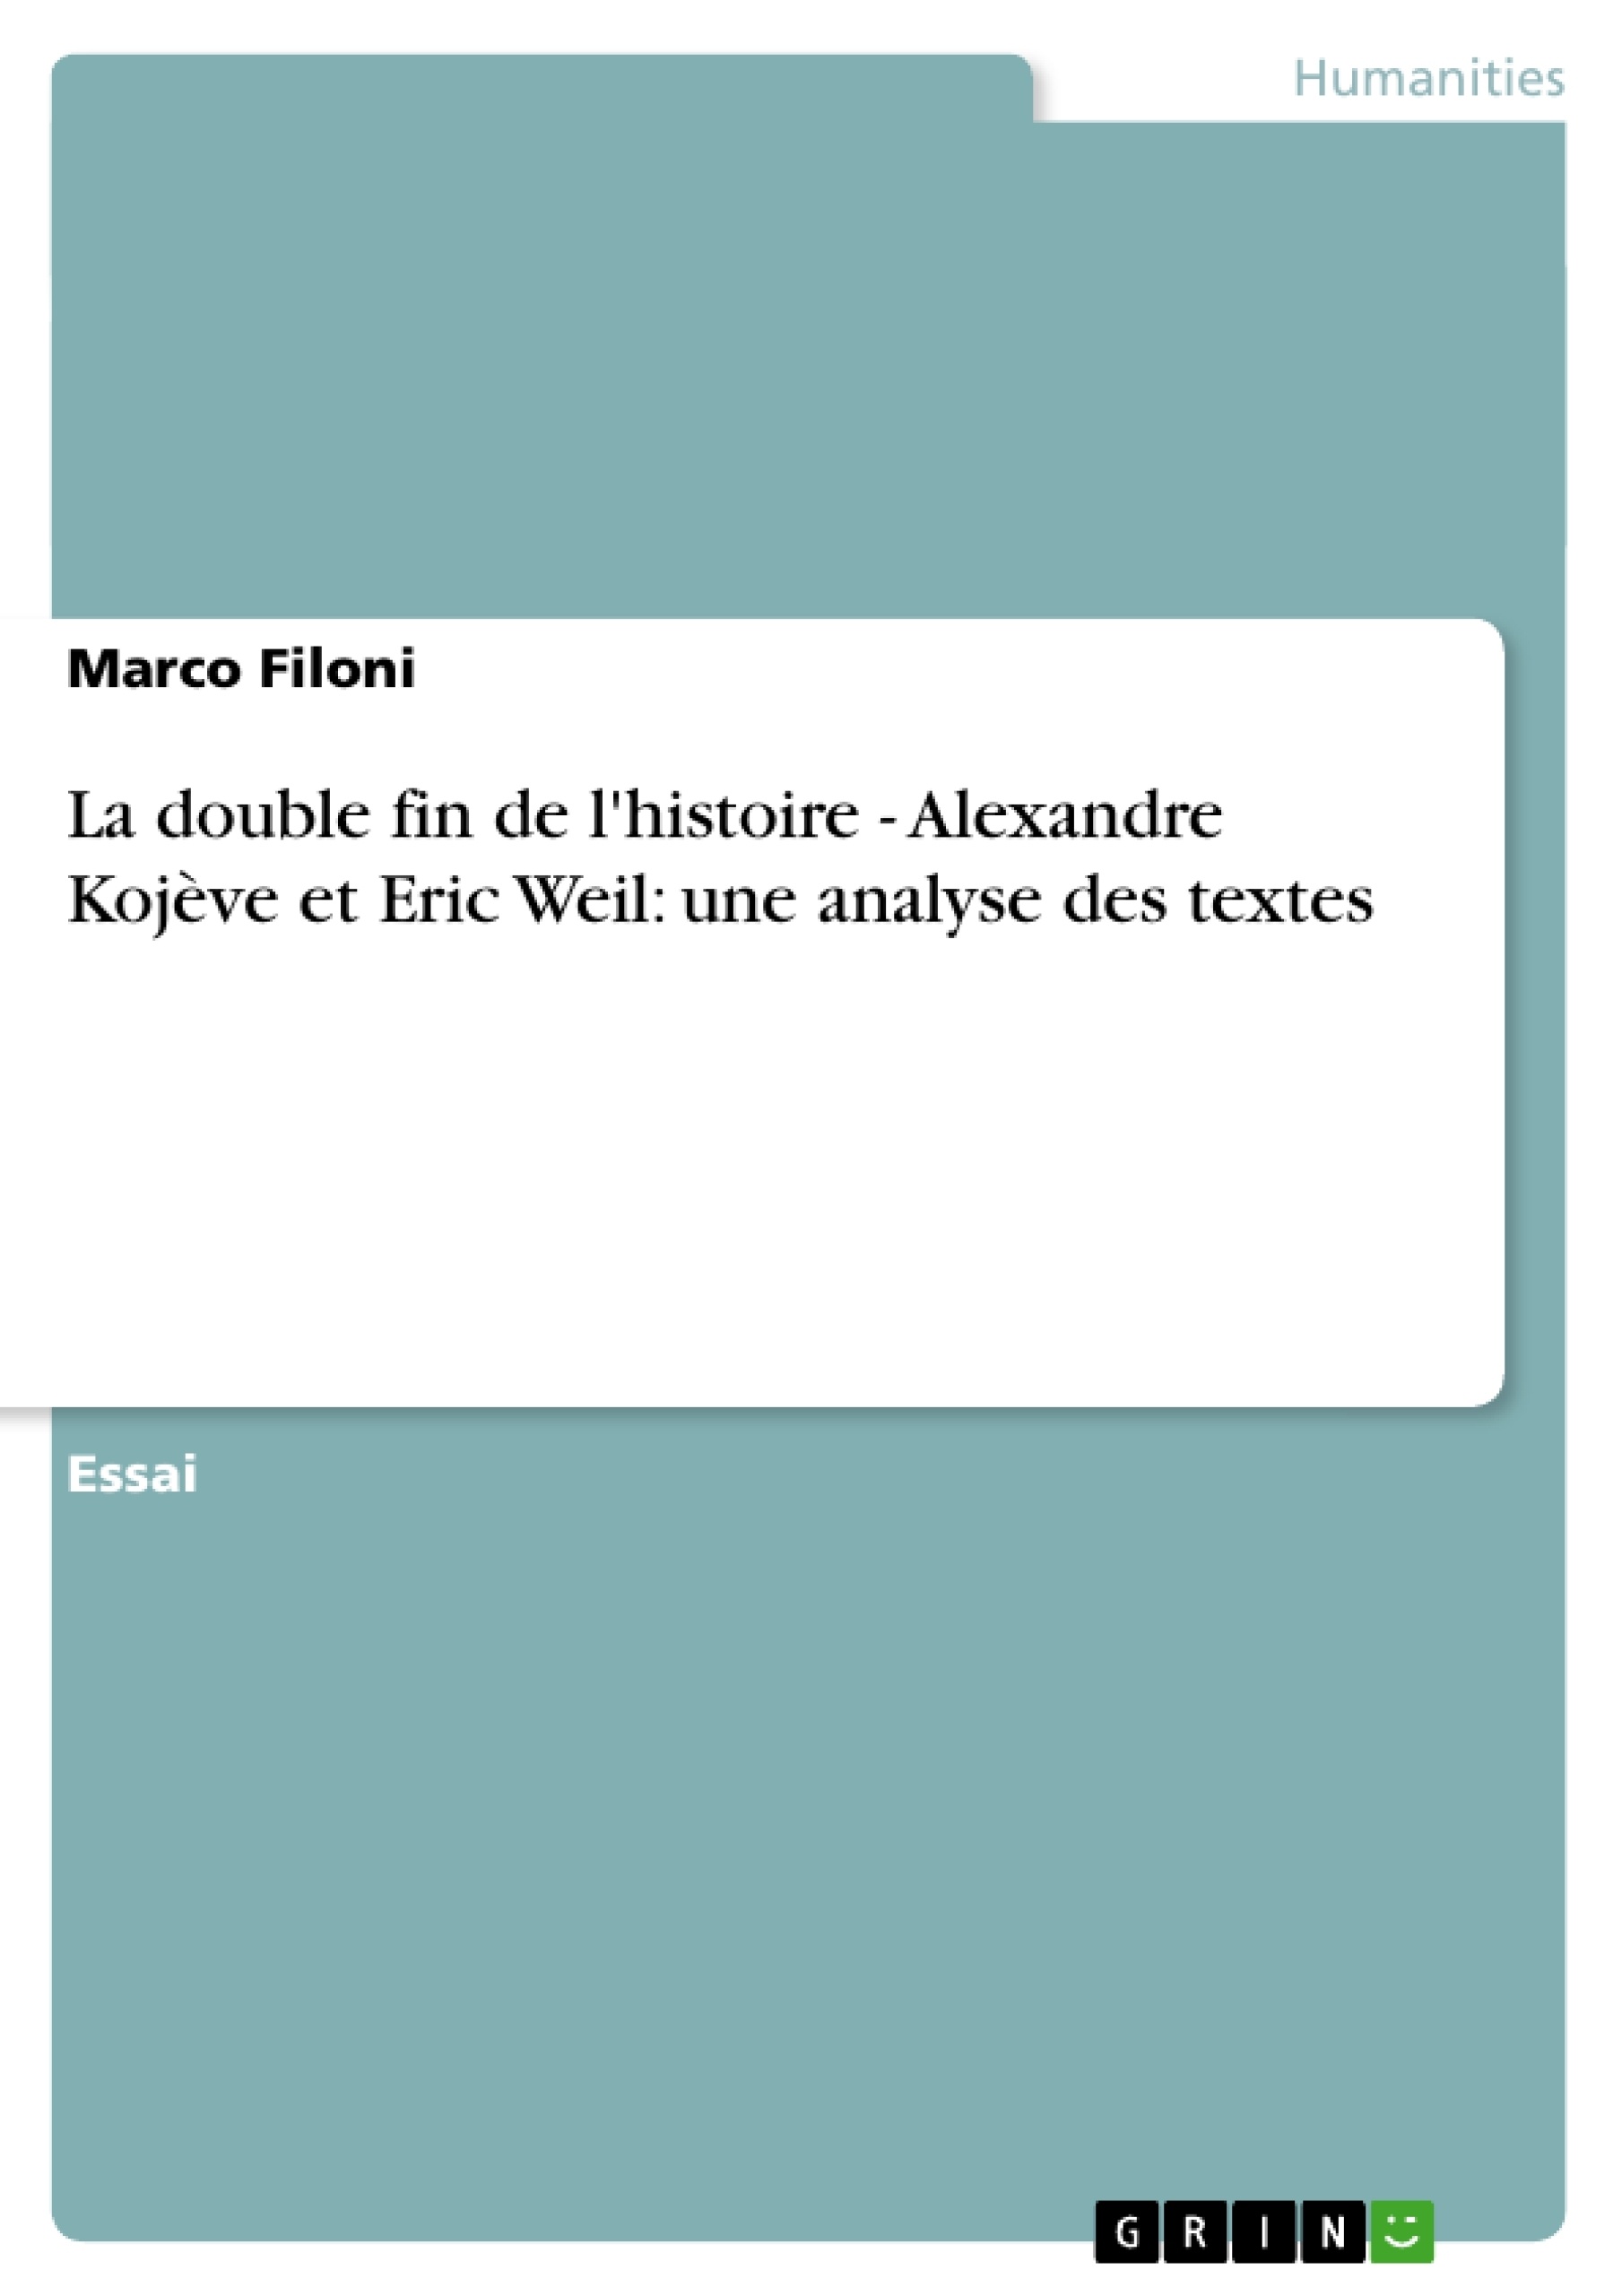 Title: La double fin de l'histoire - Alexandre Kojève et Eric Weil: une analyse des textes